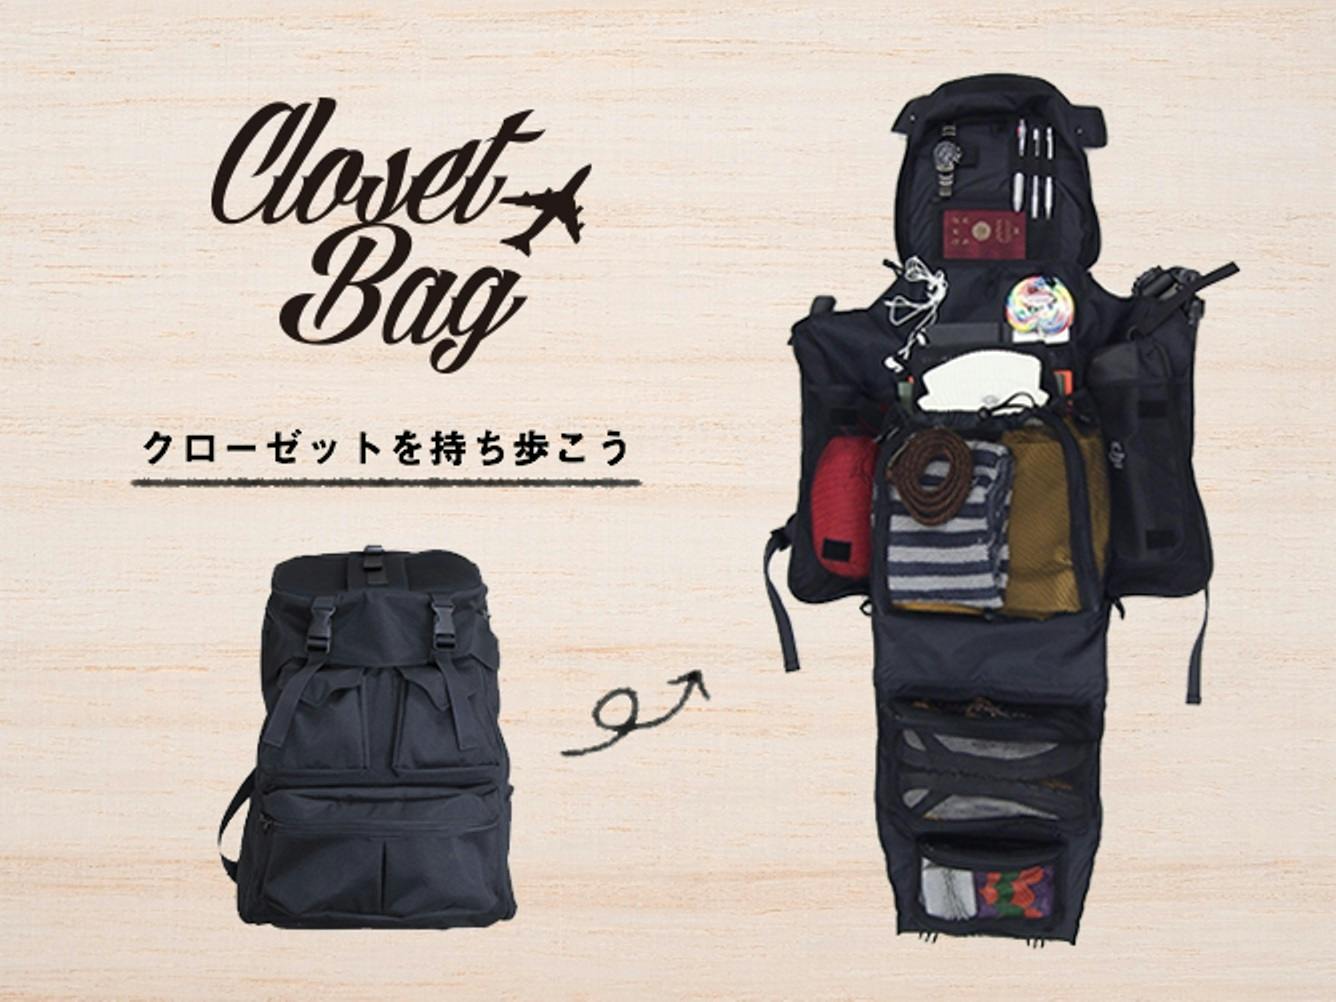 荷物を入れたまま全開に広げられる 超大容量「CLOSET BAG」